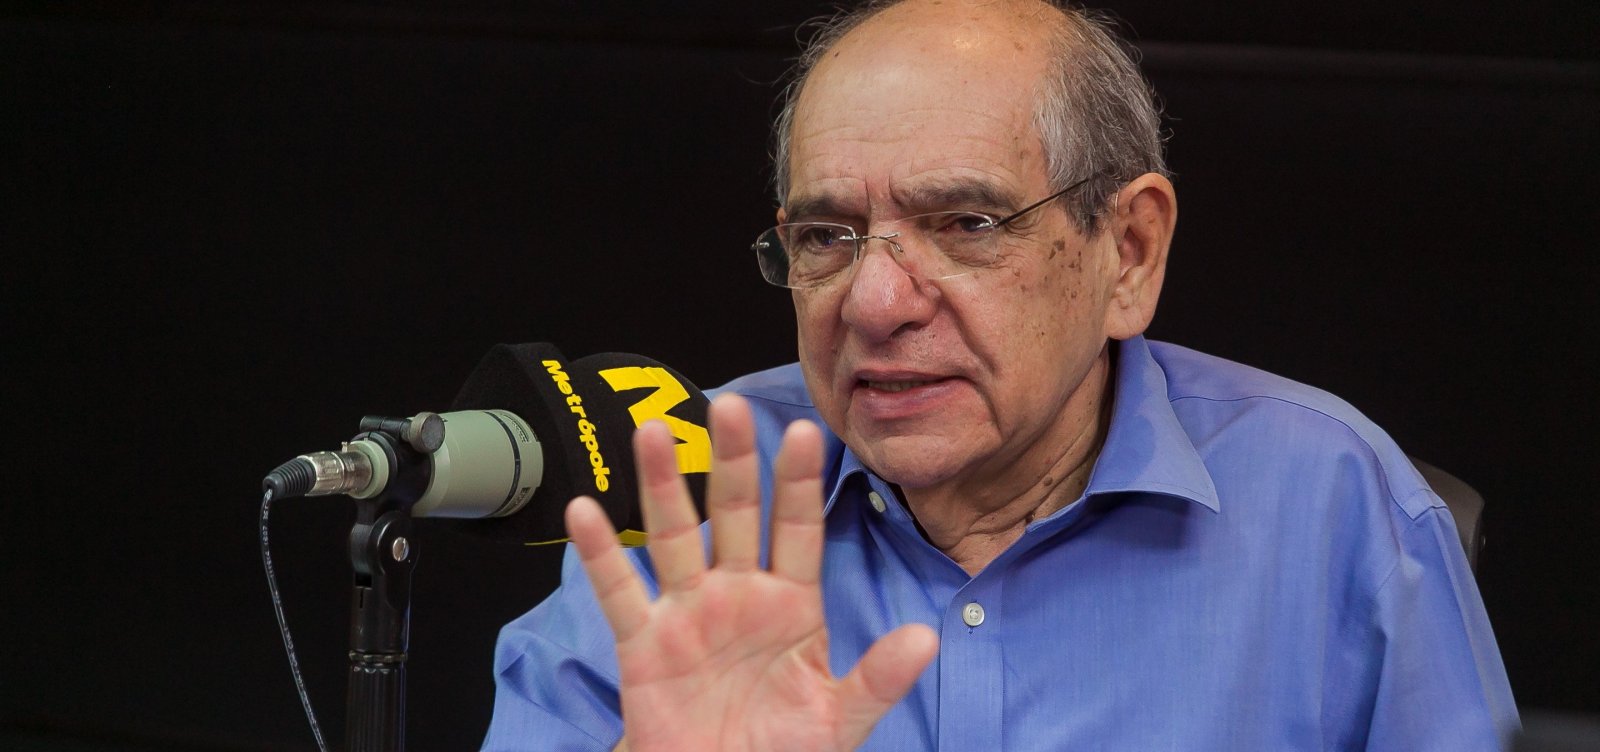 MK diz que democracia brasileira vive 'dificuldades' e critica 'censura' a Marighella; ouça